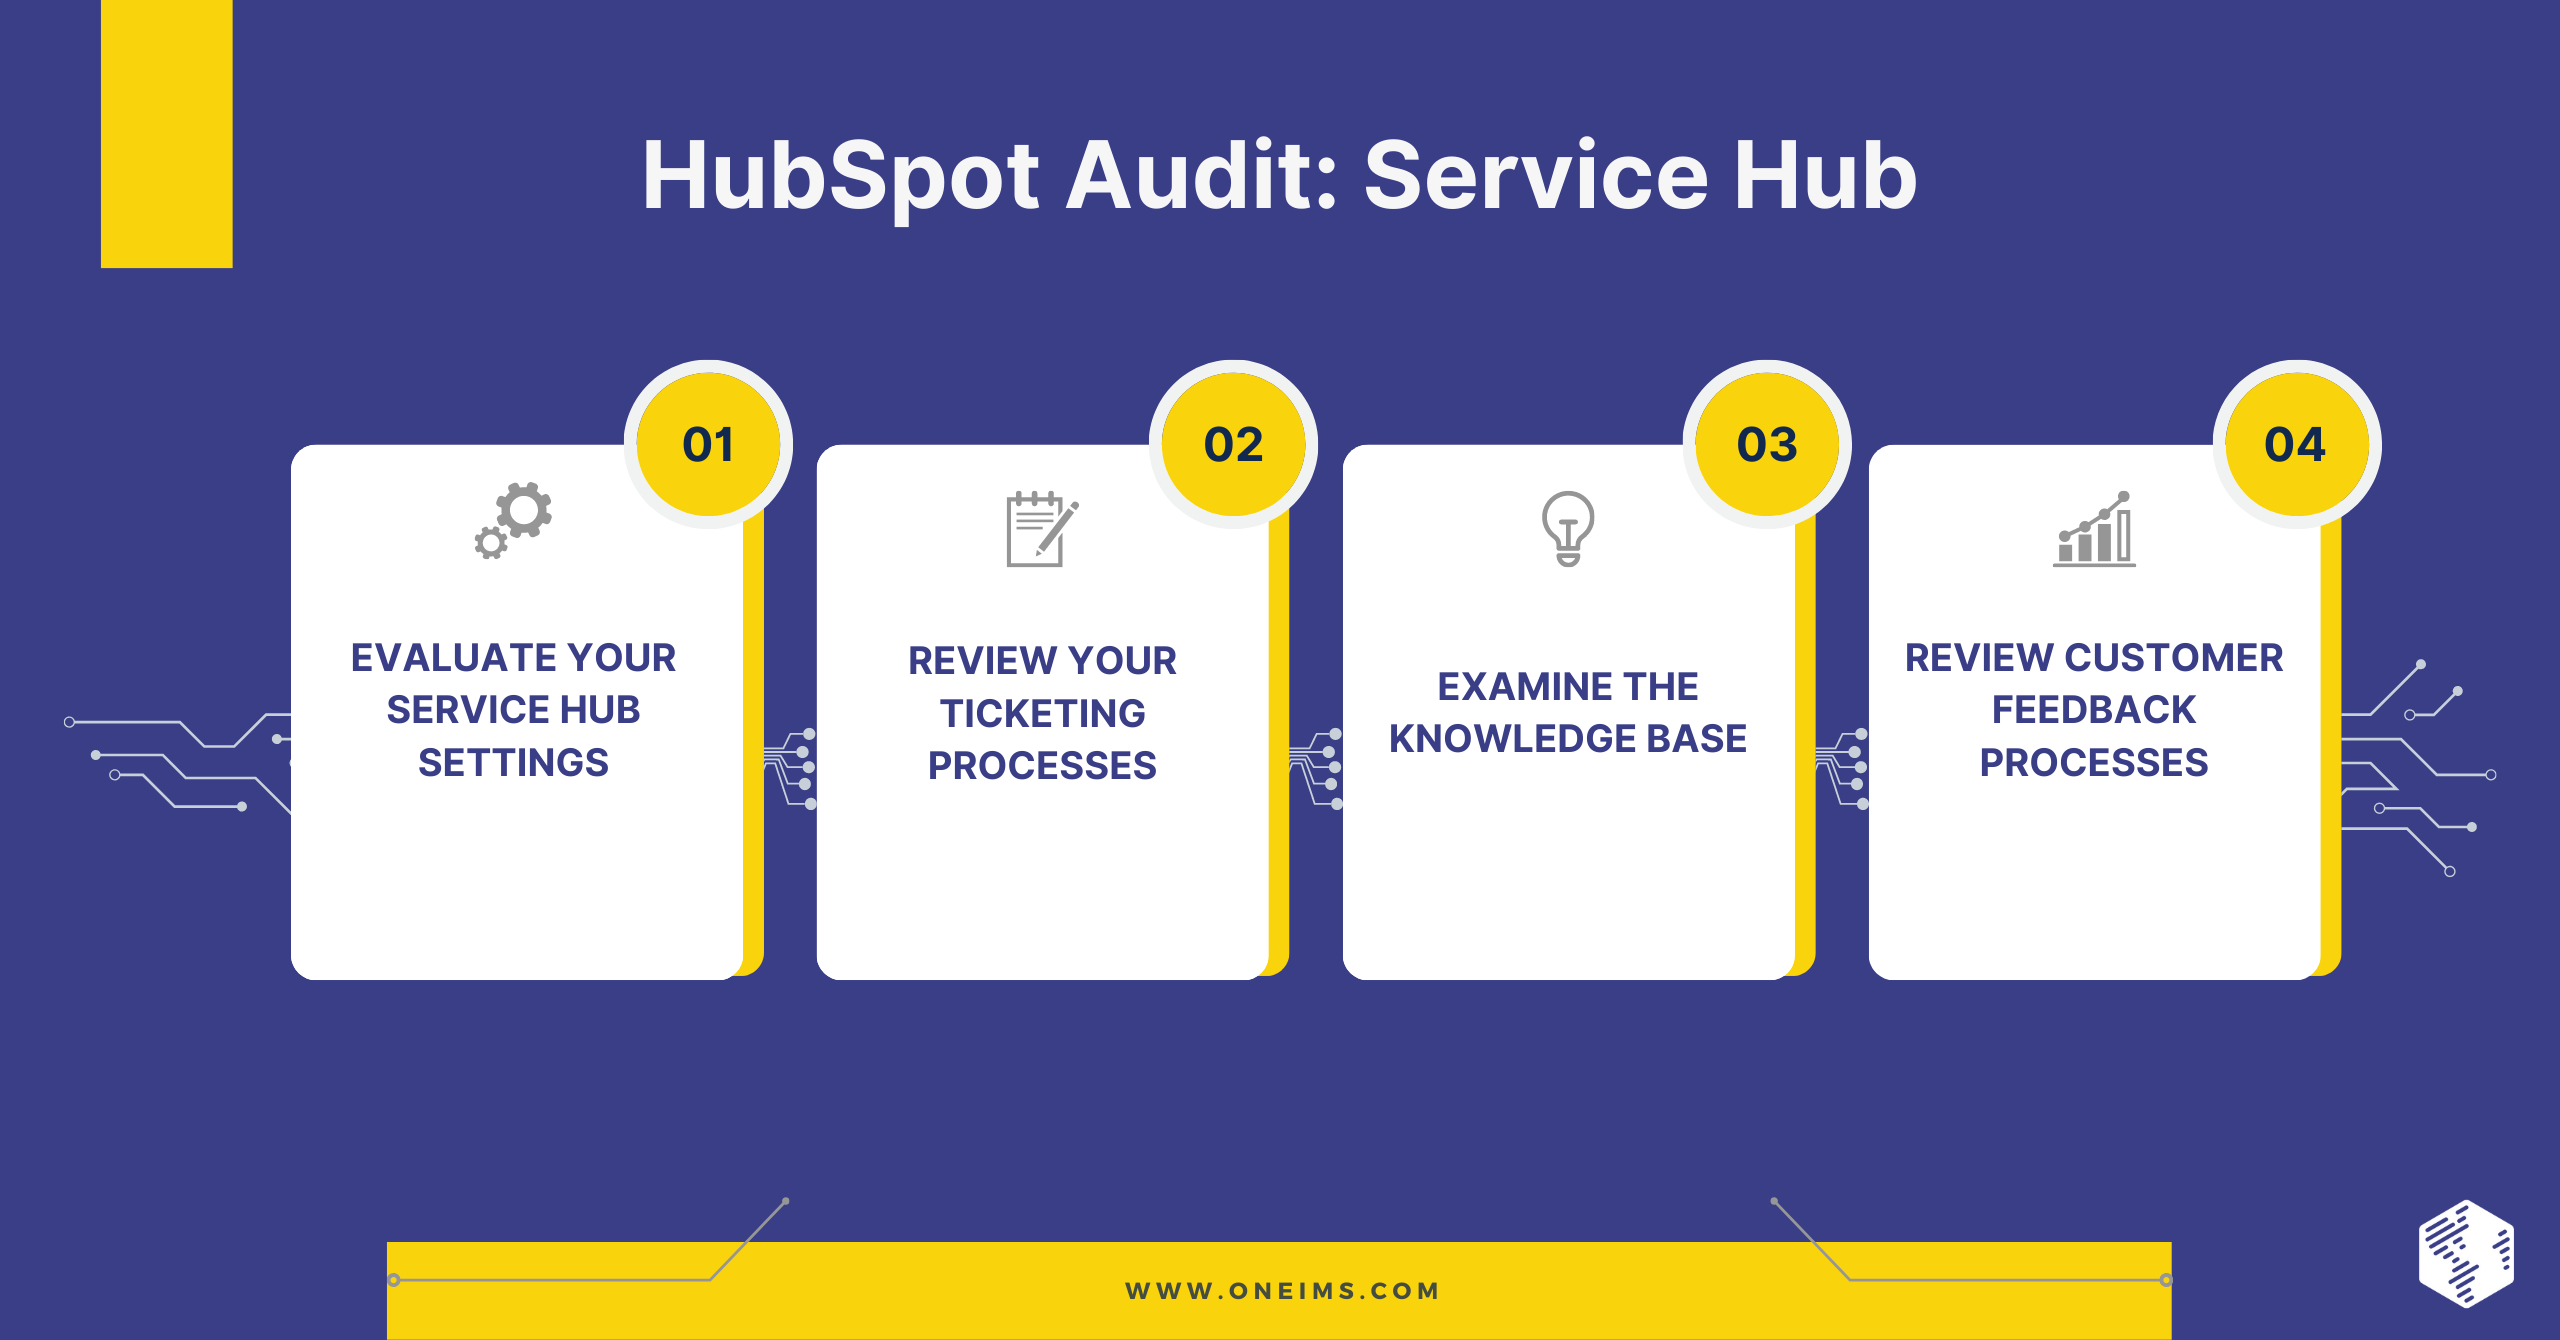 HubSpot Audit: Service Hub